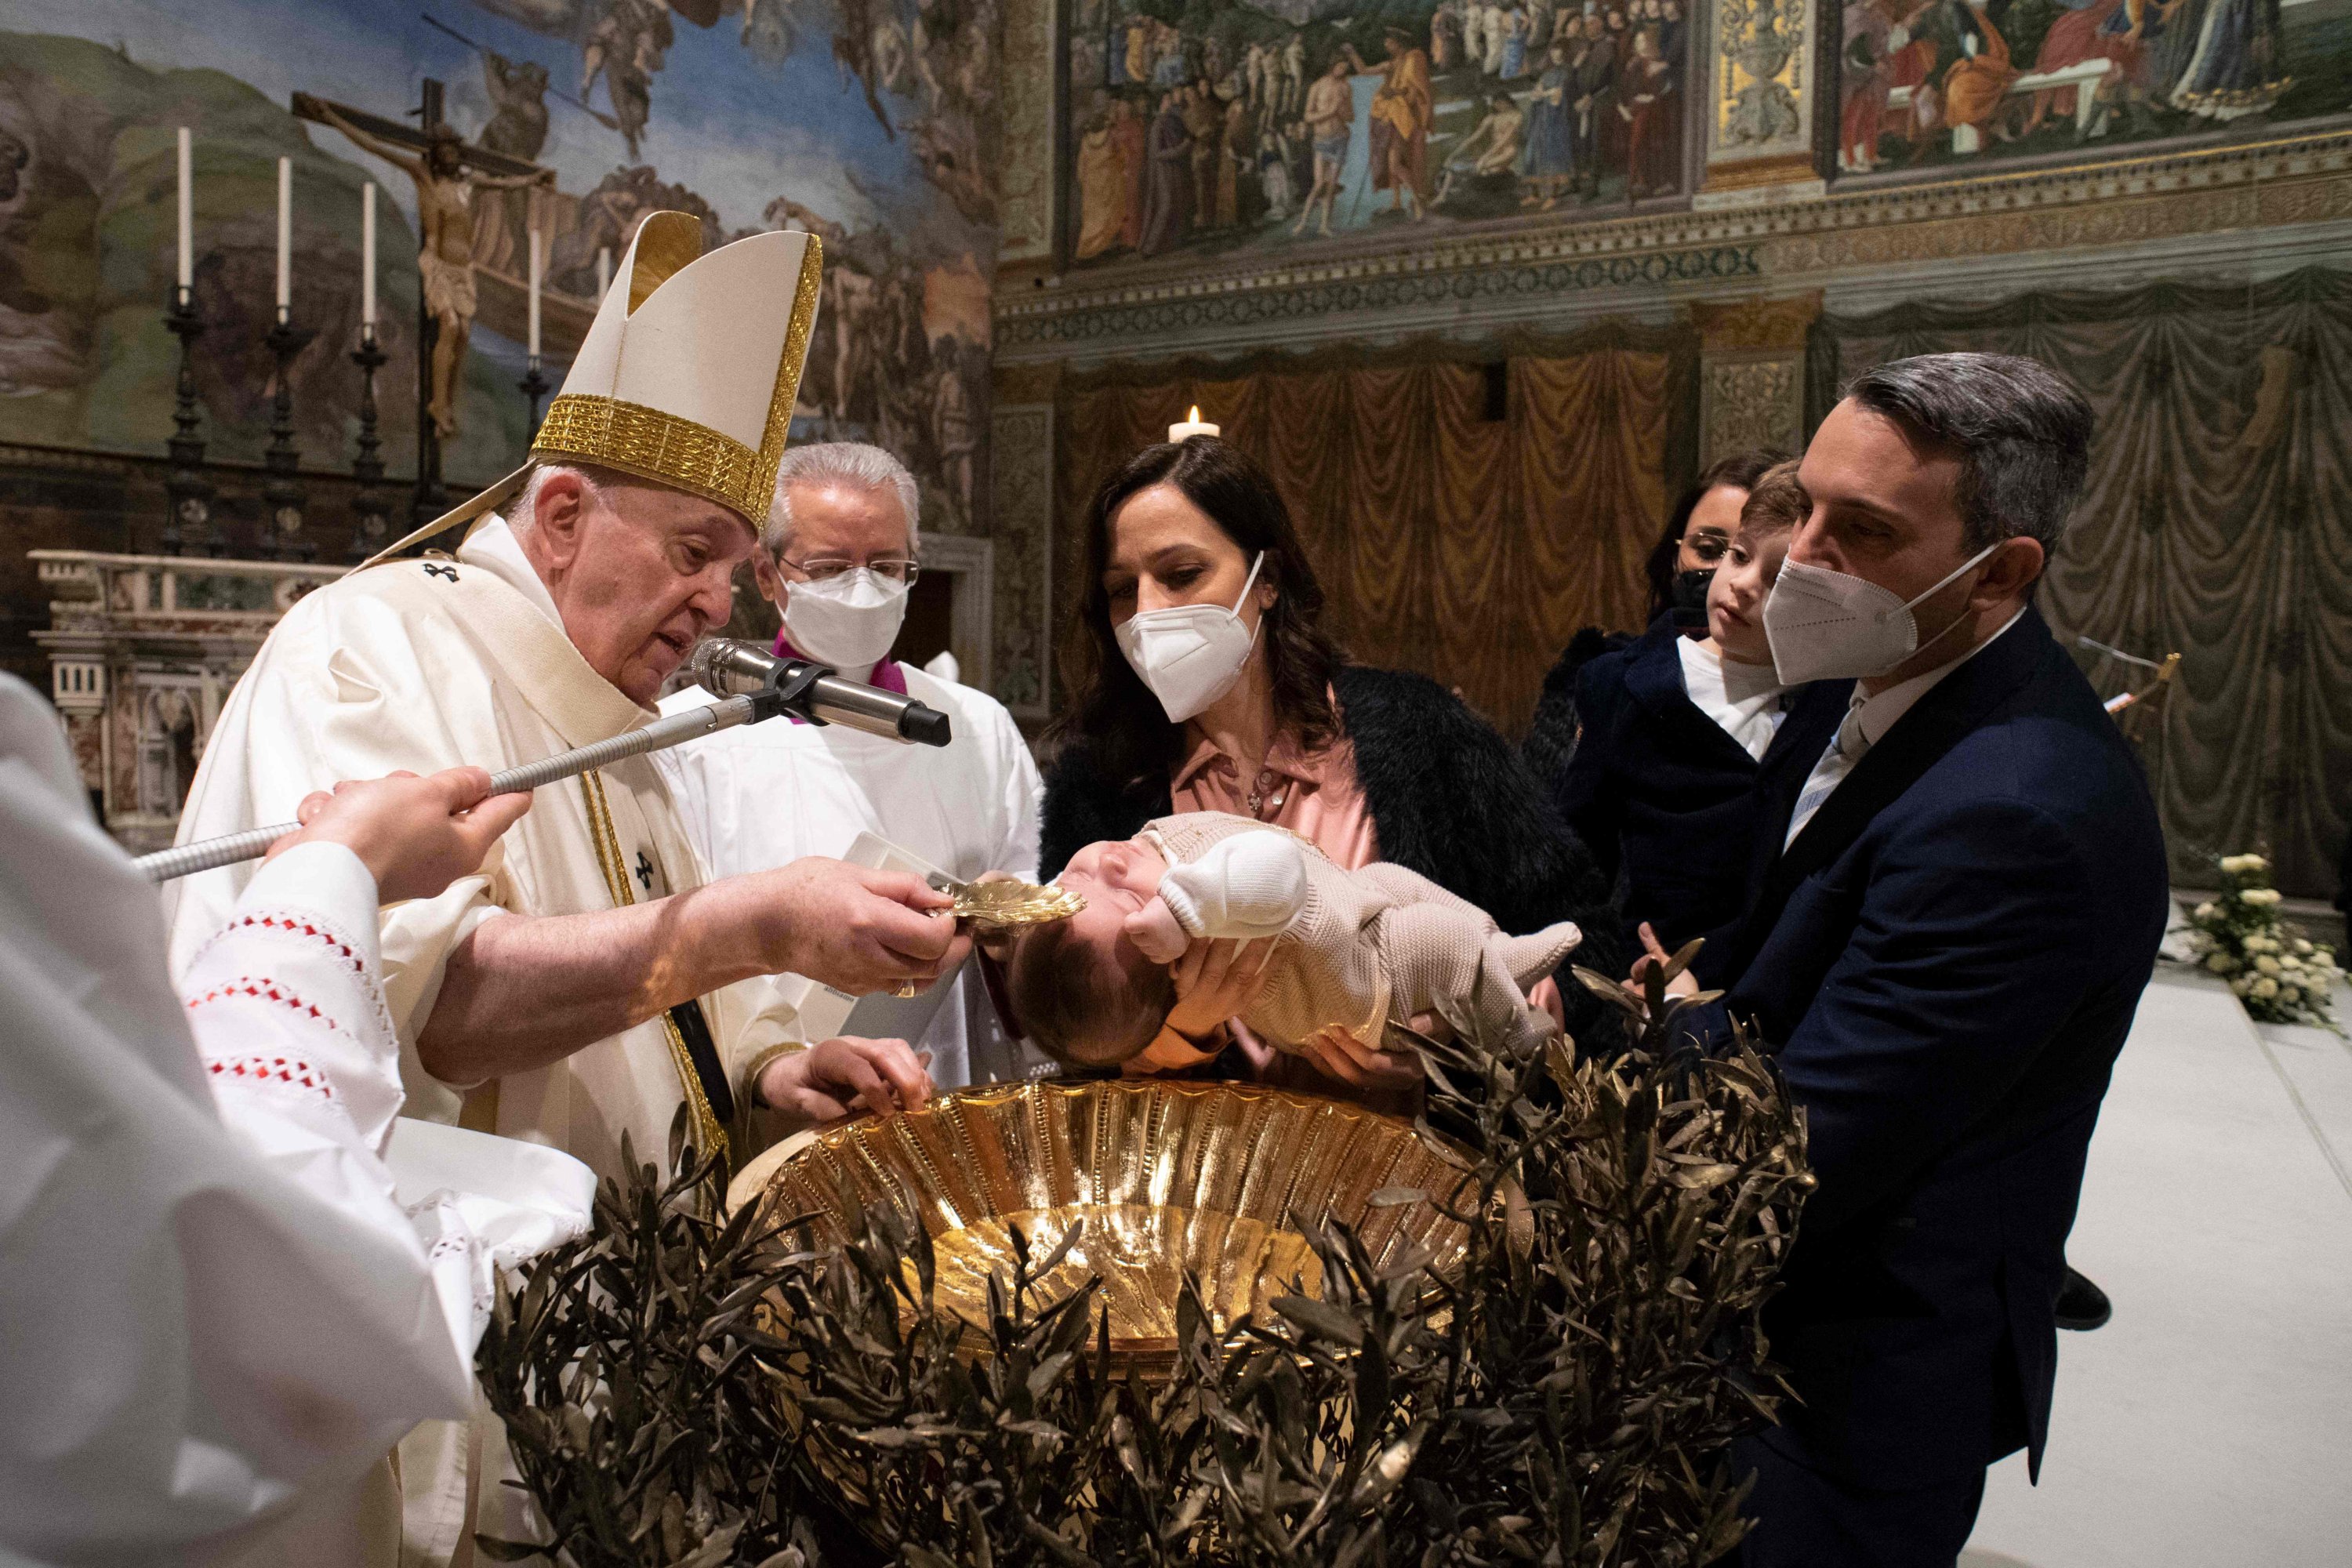 Sebuah gambar selebaran yang diambil dan dirilis pada 9 Januari 2022 oleh Divisi Produksi Fotografi menunjukkan Paus Fransiskus membaptis seorang anak selama Misa Kudus di Kapel Sistina di Vatikan.  (Foto oleh Simone Risoluti / Divisi Produksi Fotografi via AFP)